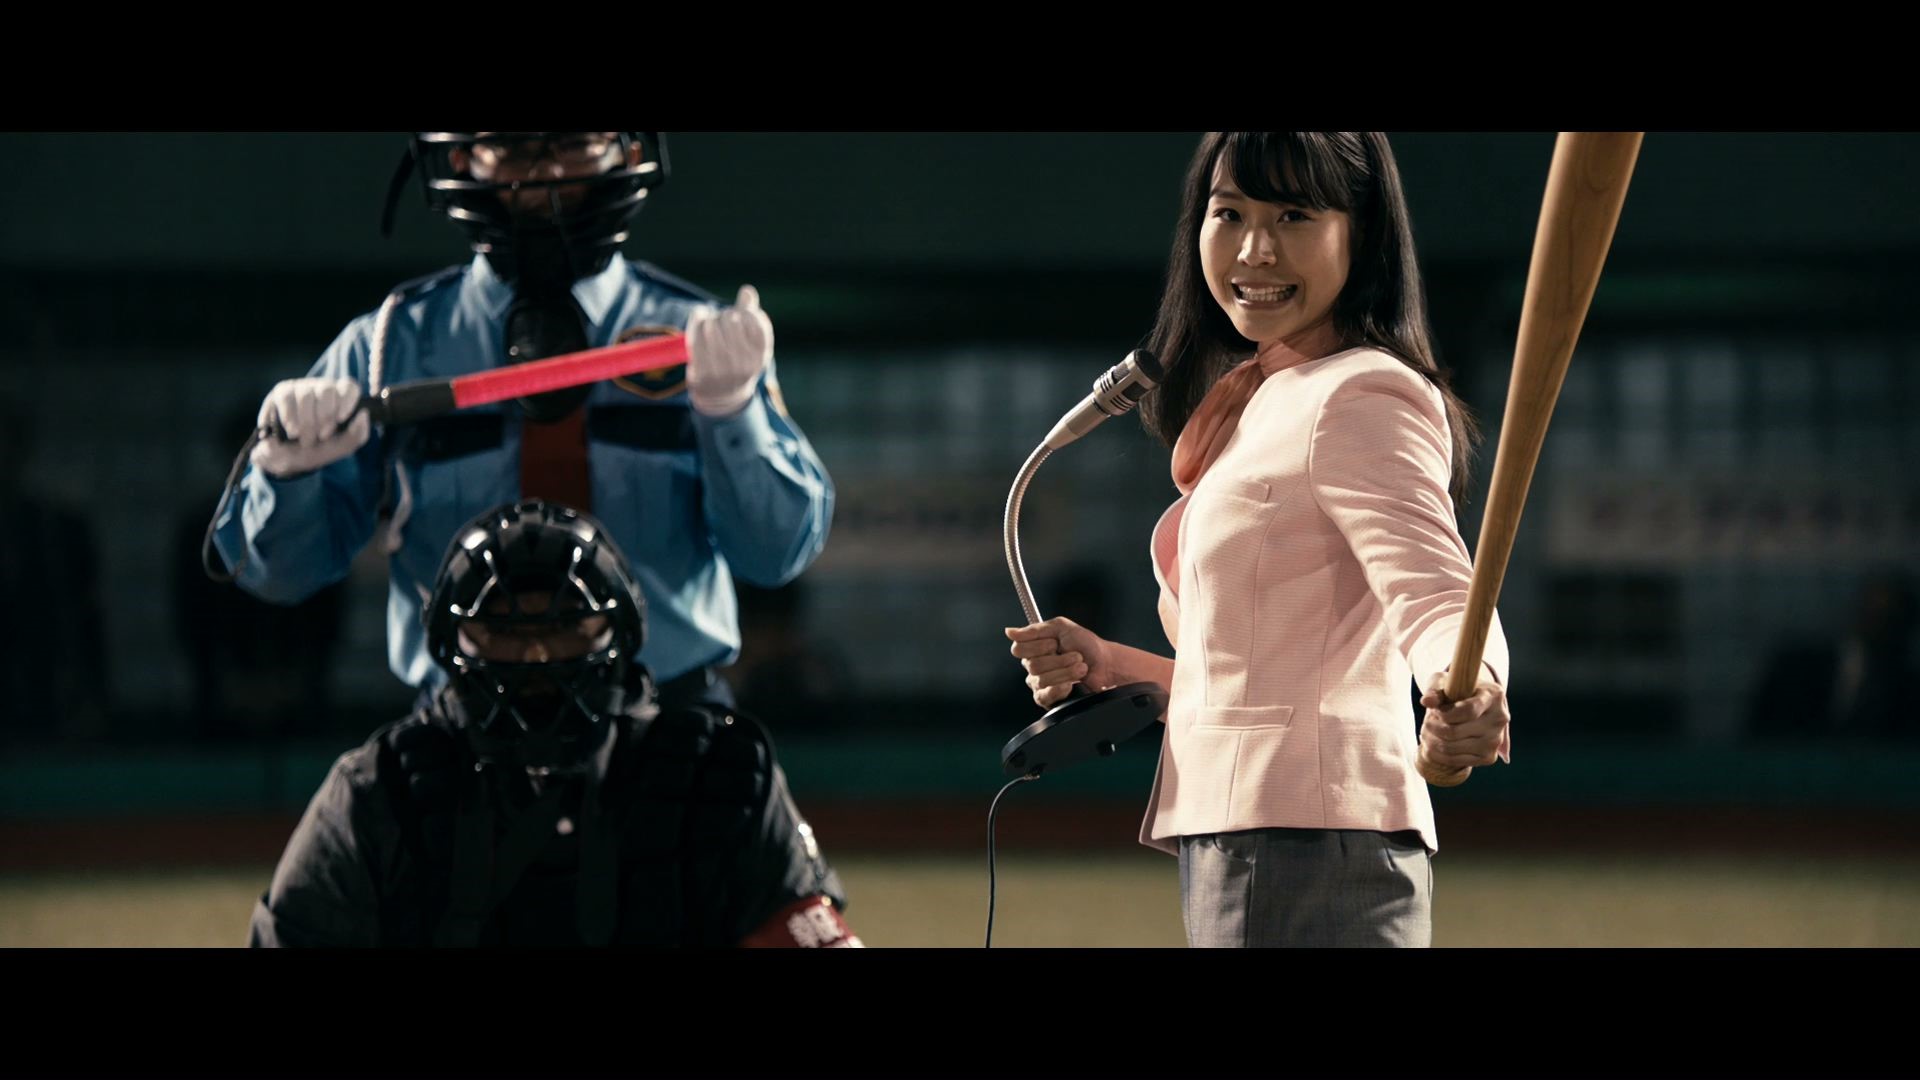 パーソルグループの新cmに人気野球解説者 里崎 智也さんが出演 パ リーグ全員野球 篇 パーソルhdのプレスリリース